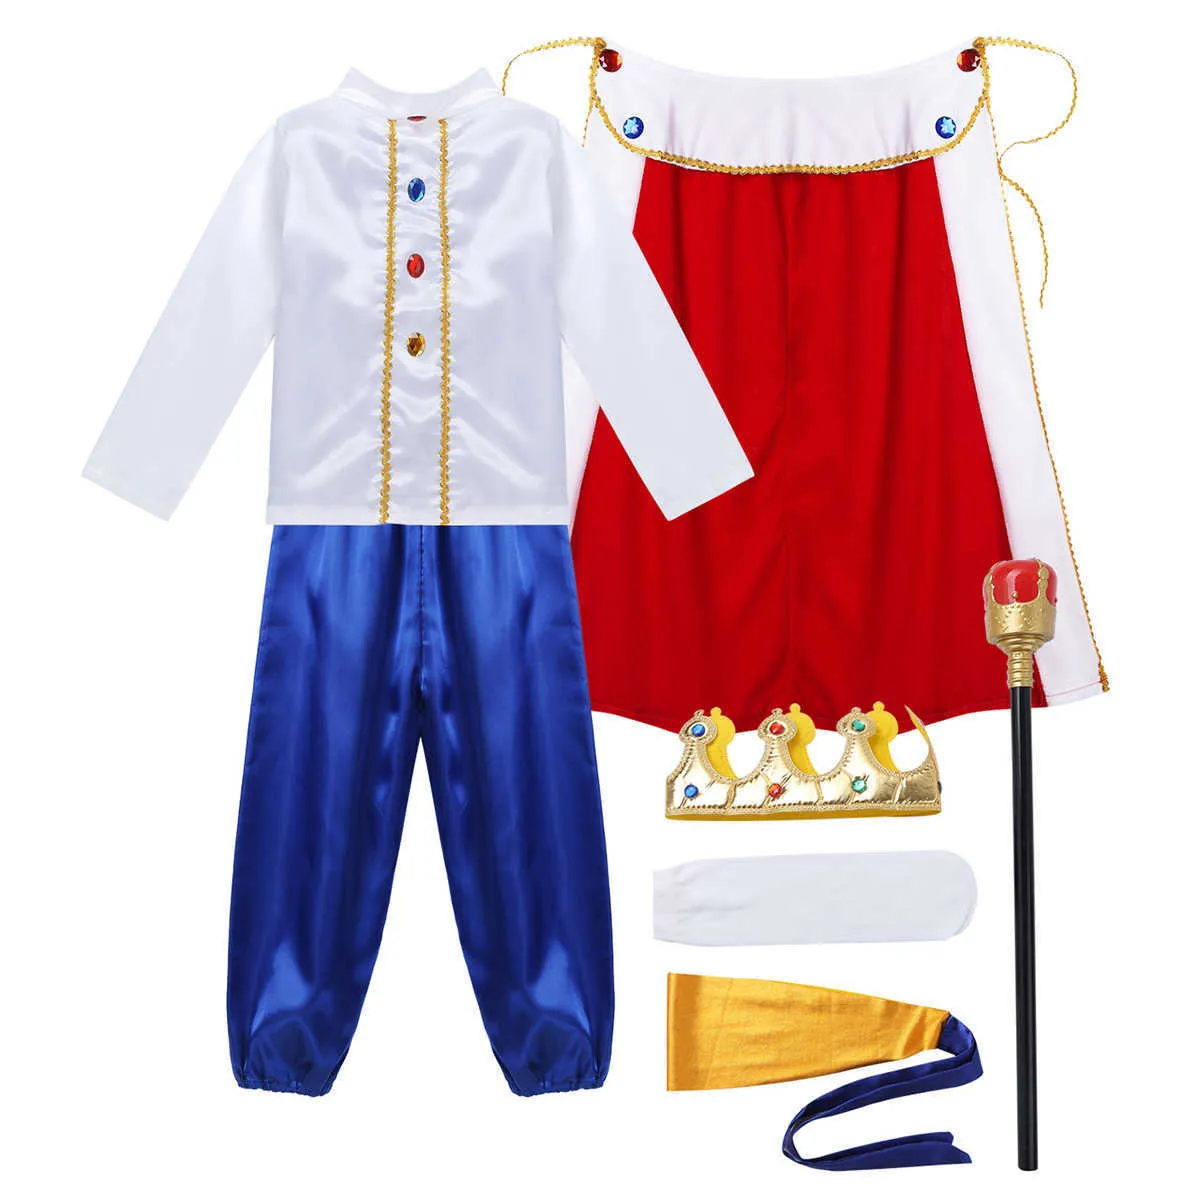 TiaoBug Enfants Garçons Halloween Cosplay Habiller Costume De Roi Médiéval Prince Cape Couronne Sceptre Ensemble Carnaval Roleplay Party Outfit Q0910